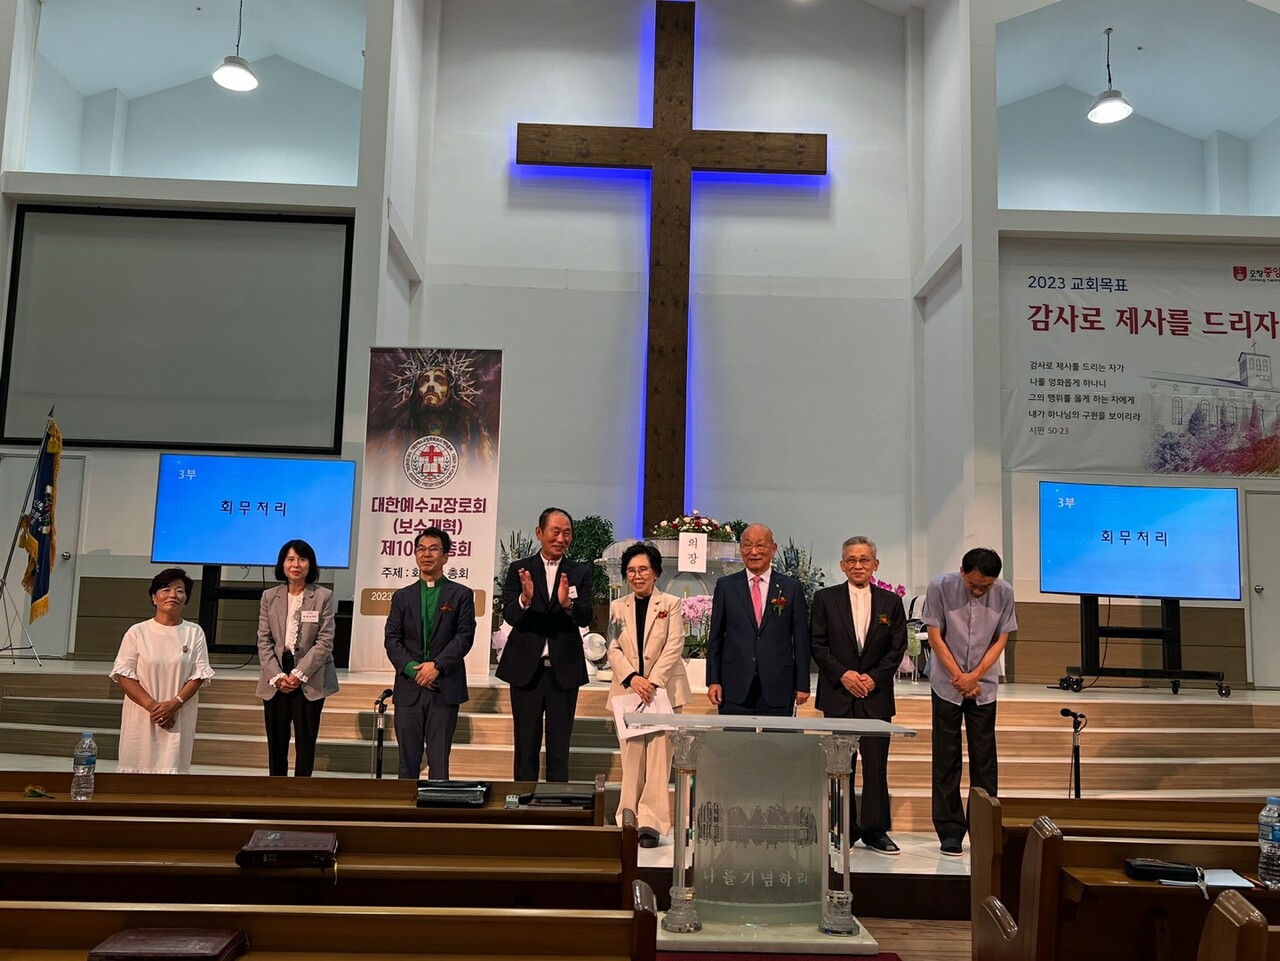 예장 보수개혁총회가 오세억 총회장을 재선출하고, 한국교회 연합운동에 적극 참여할 것을 결의했다. 